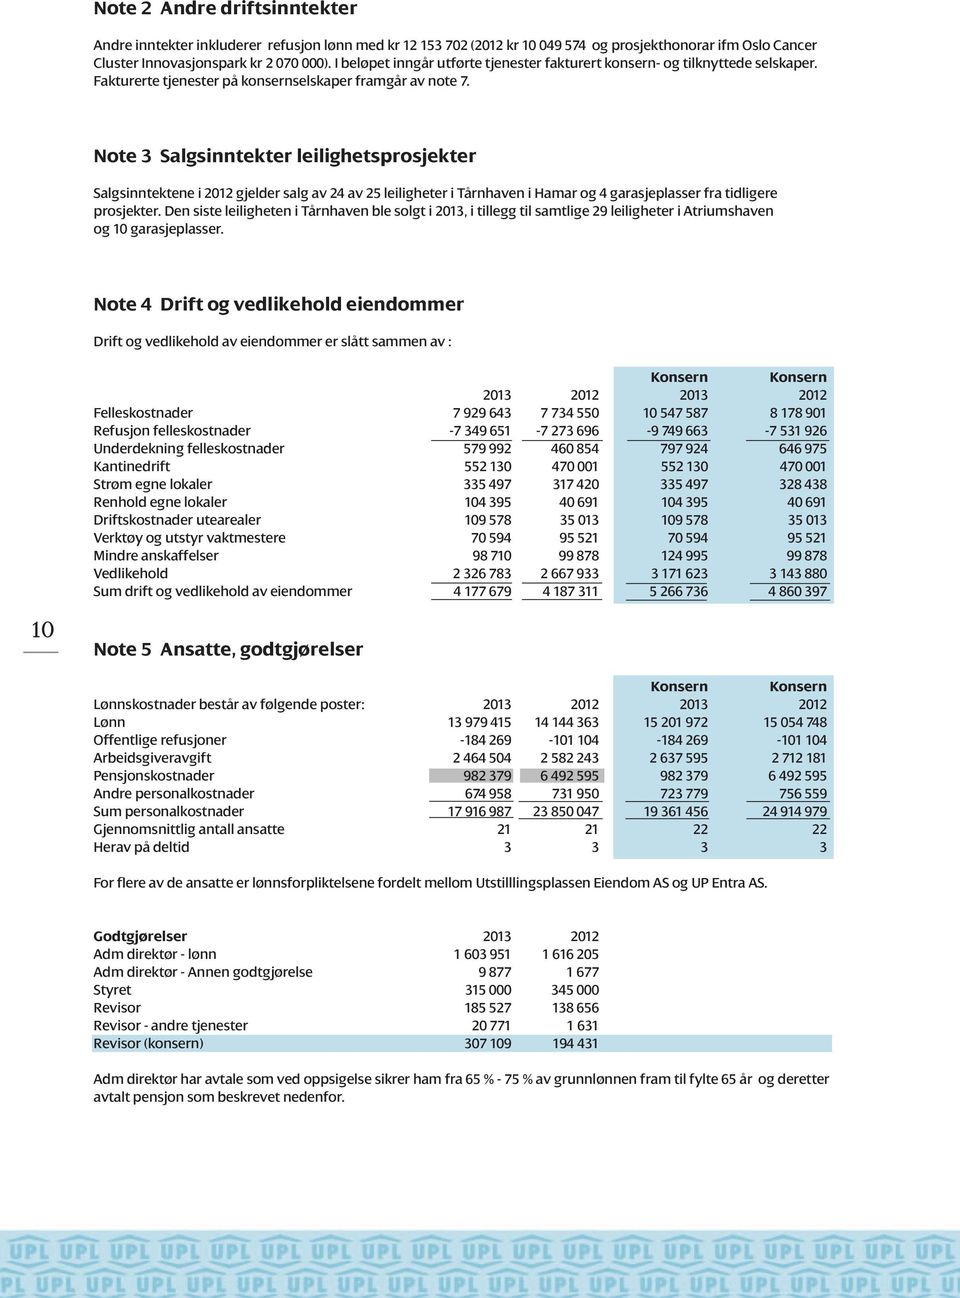 Note 3 Salgsinntekter leilighetsprosjekter Salgsinntektene i 2012 gjelder salg av 24 av 25 leiligheter i Tårnhaven i Hamar og 4 garasjeplasser fra tidligere prosjekter.